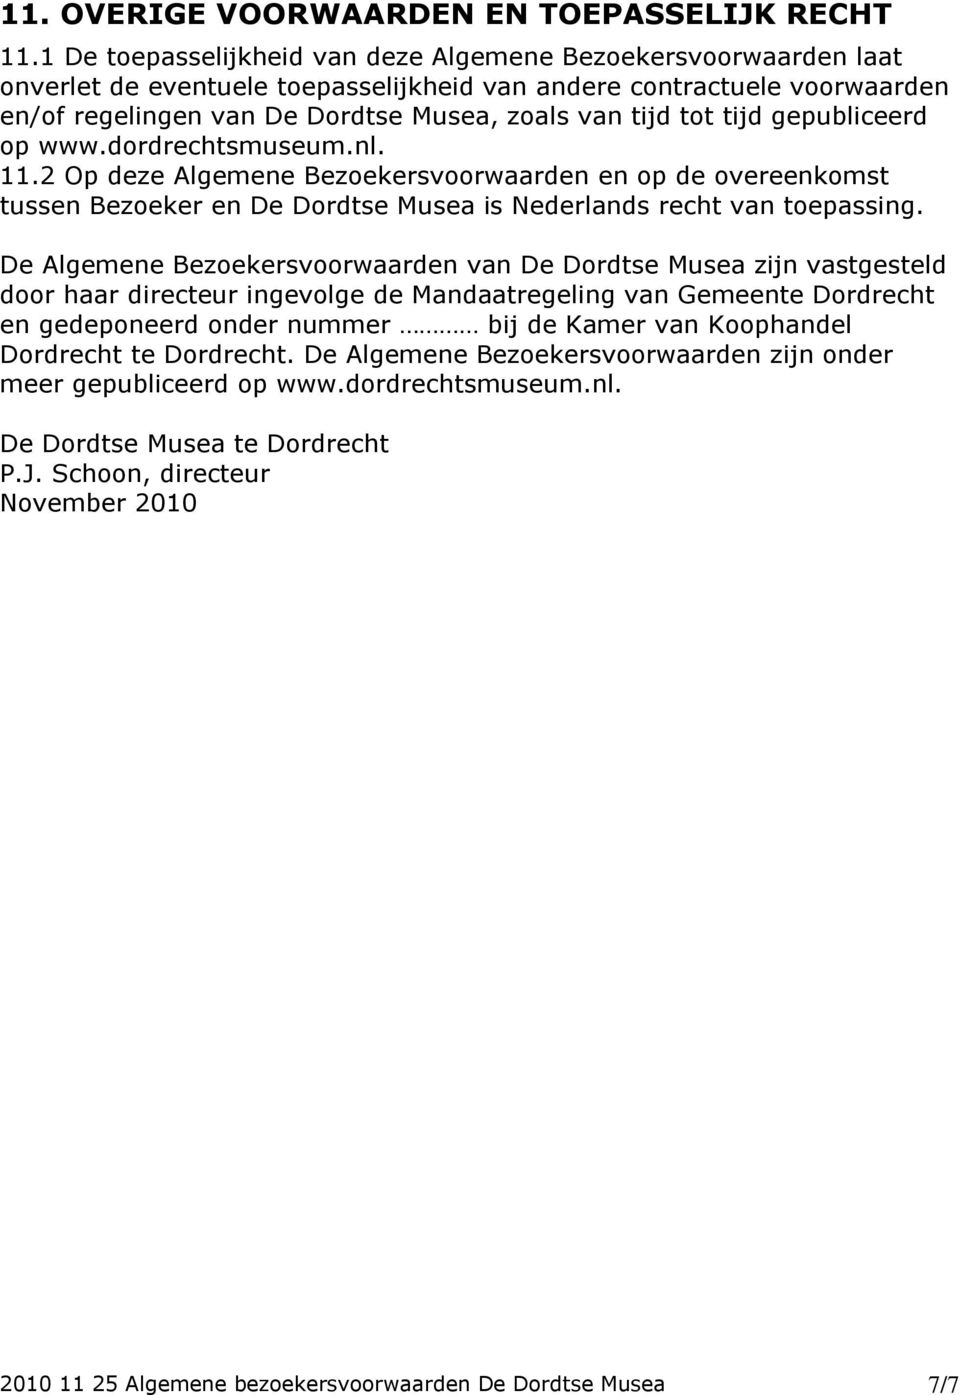 tijd gepubliceerd op www.dordrechtsmuseum.nl. 11.2 Op deze Algemene Bezoekersvoorwaarden en op de overeenkomst tussen Bezoeker en De Dordtse Musea is Nederlands recht van toepassing.